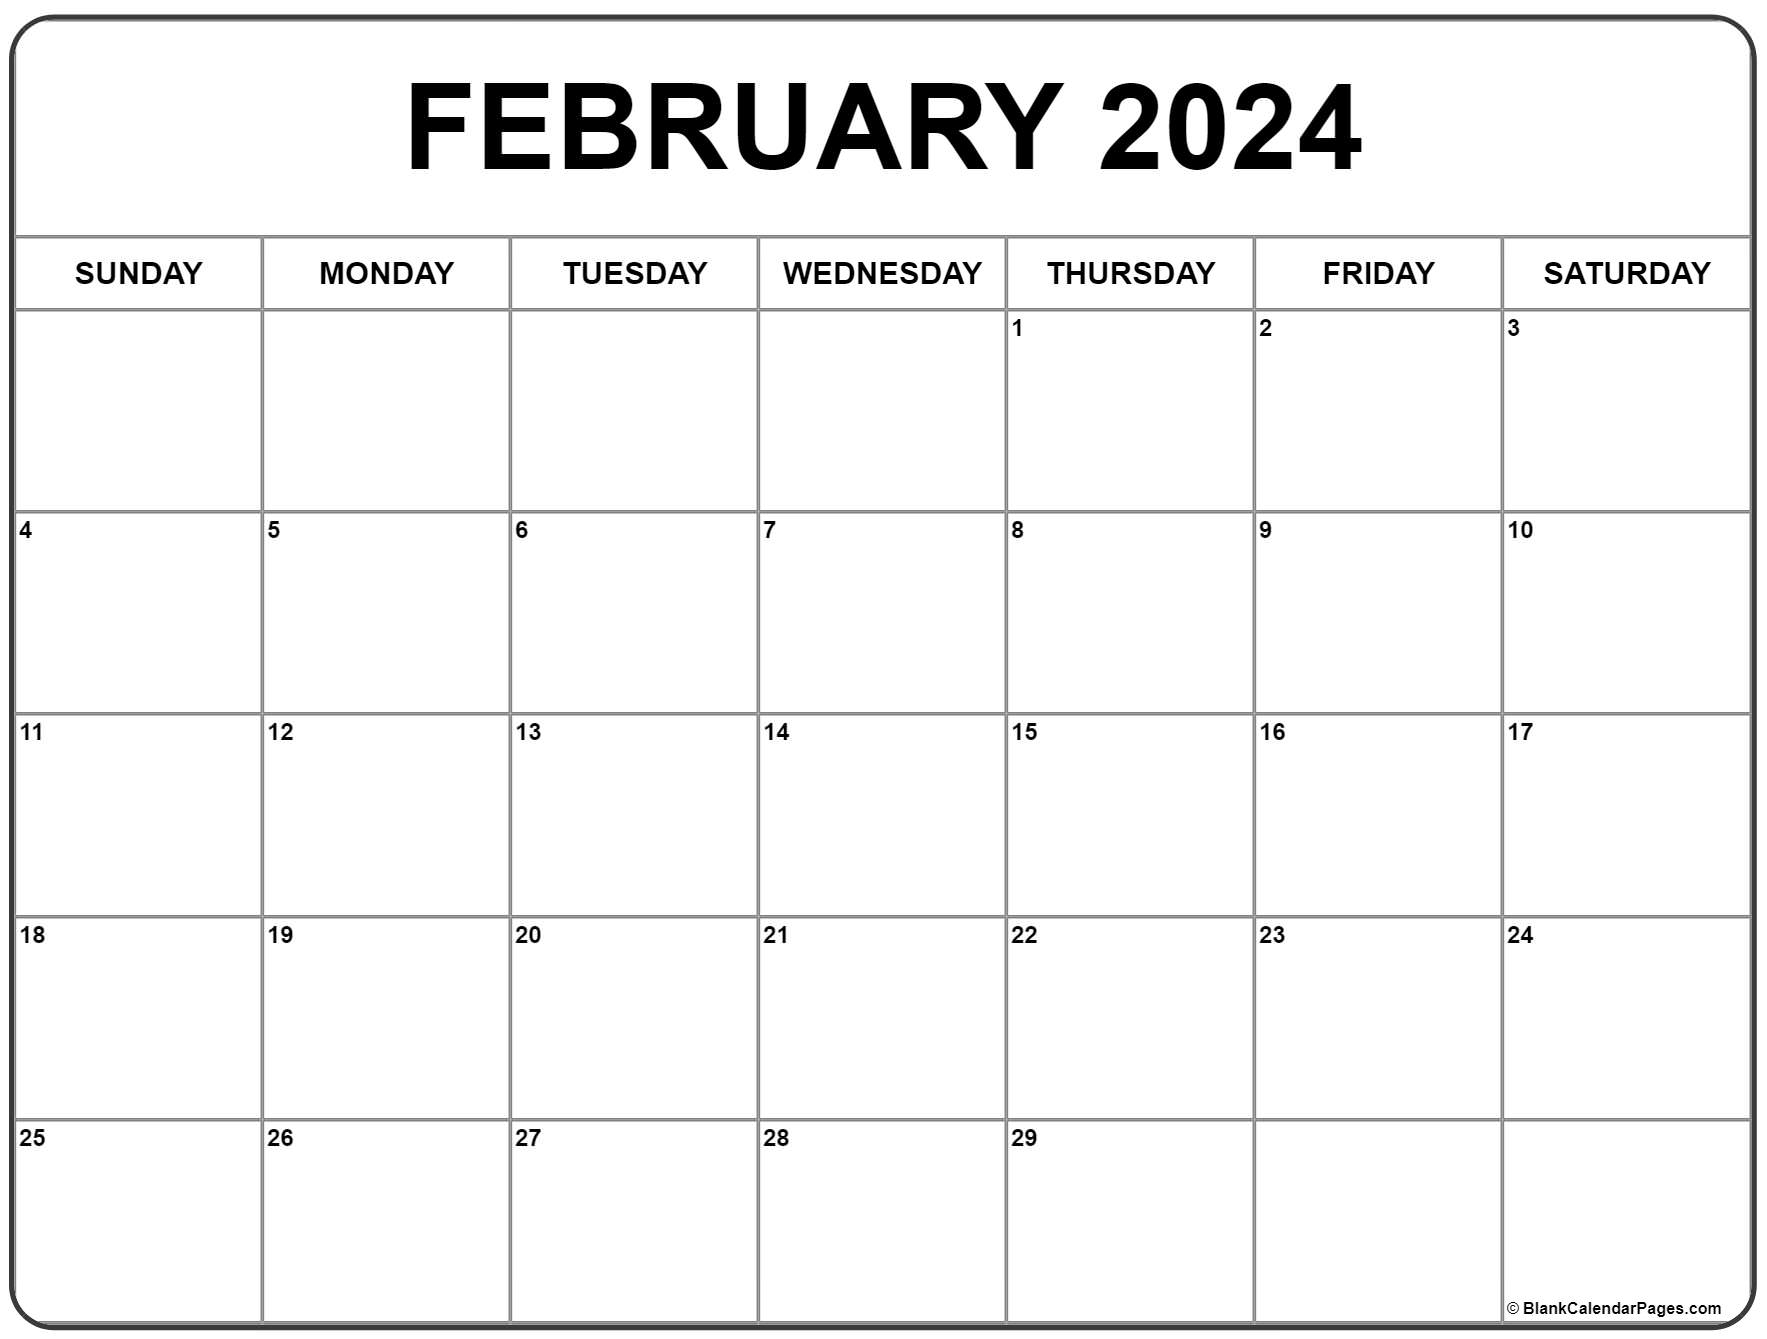 February 2024 Calendar | Free Printable Calendar for 2024 Printable Calendar February